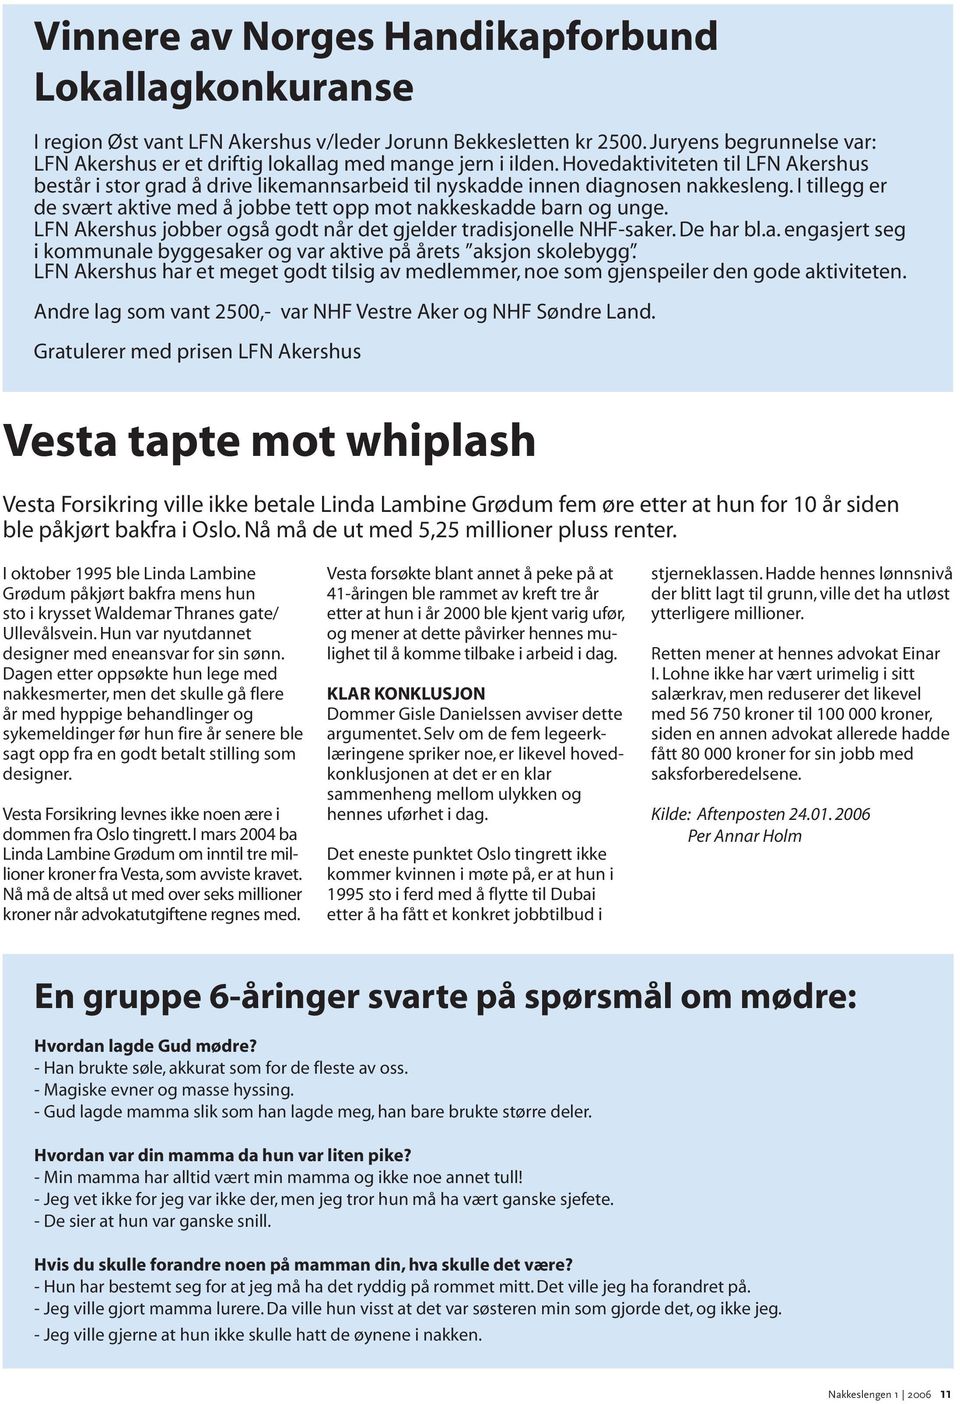 Hovedaktiviteten til LFN Akershus består i stor grad å drive likemannsarbeid til nyskadde innen diagnosen nakkesleng. I tillegg er de svært aktive med å jobbe tett opp mot nakkeskadde barn og unge.